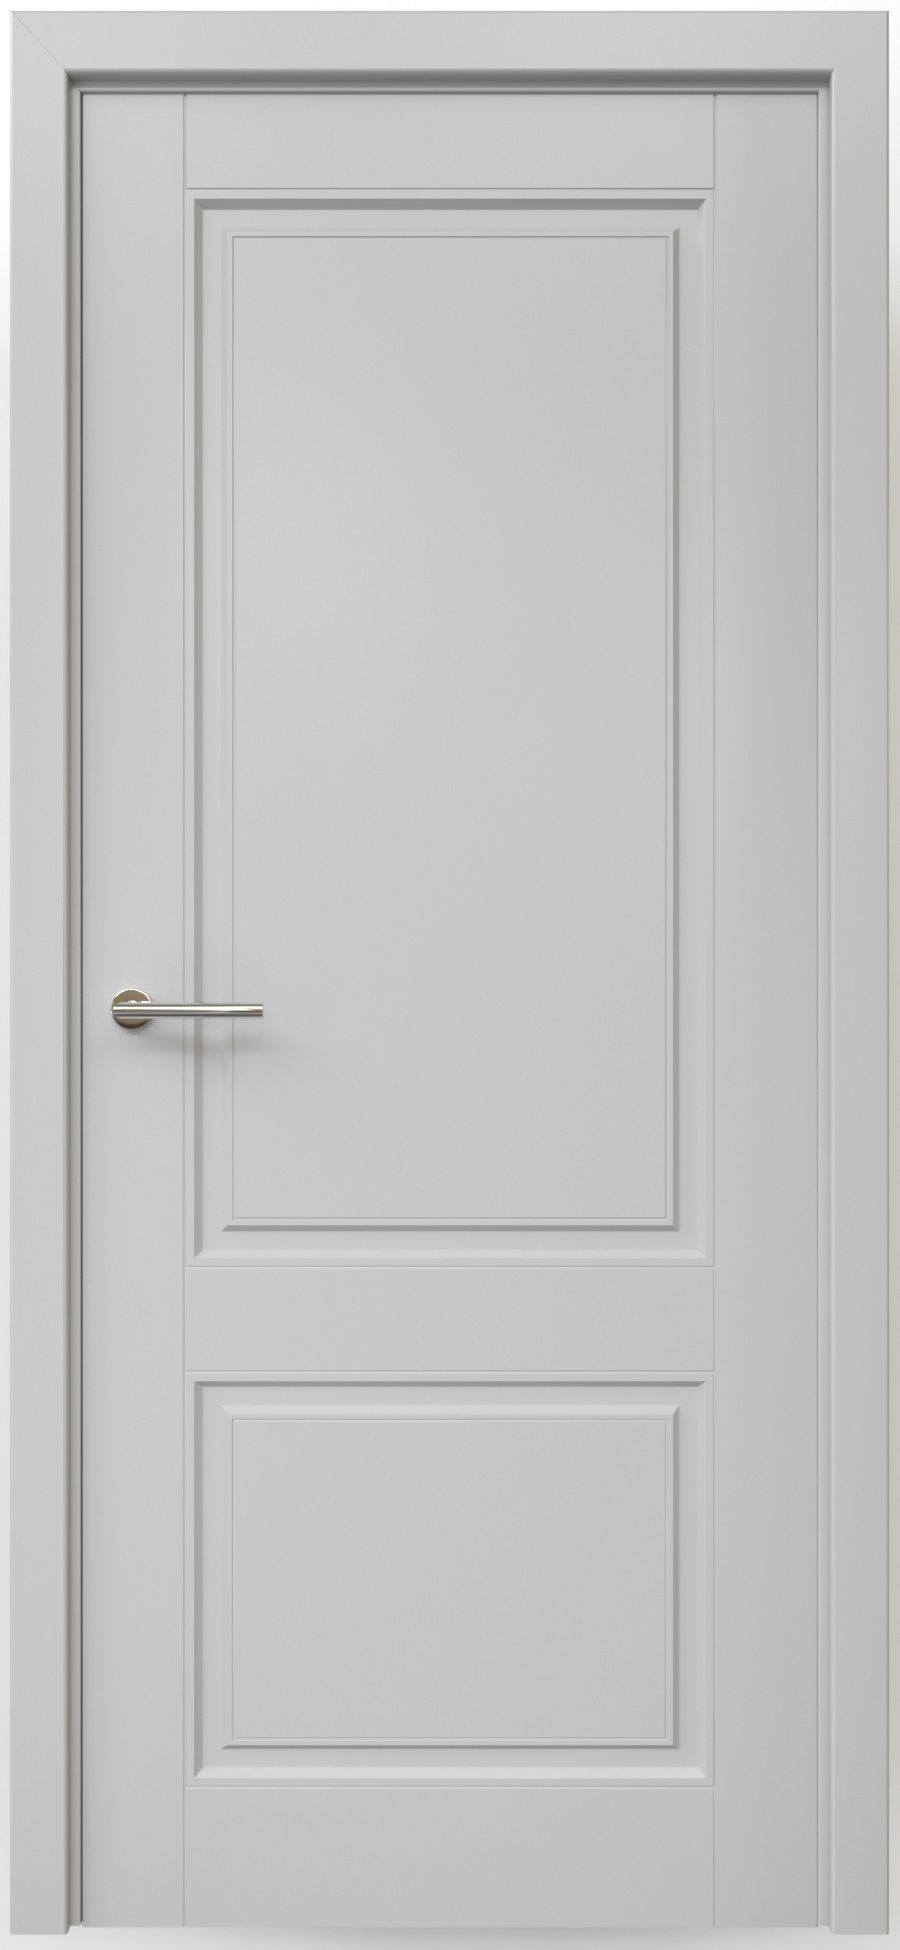 Полотно дверное глухое СХЕМА Эмаль-1 ПГ Эмаль Классика-2 900 серый (защелка маг.)